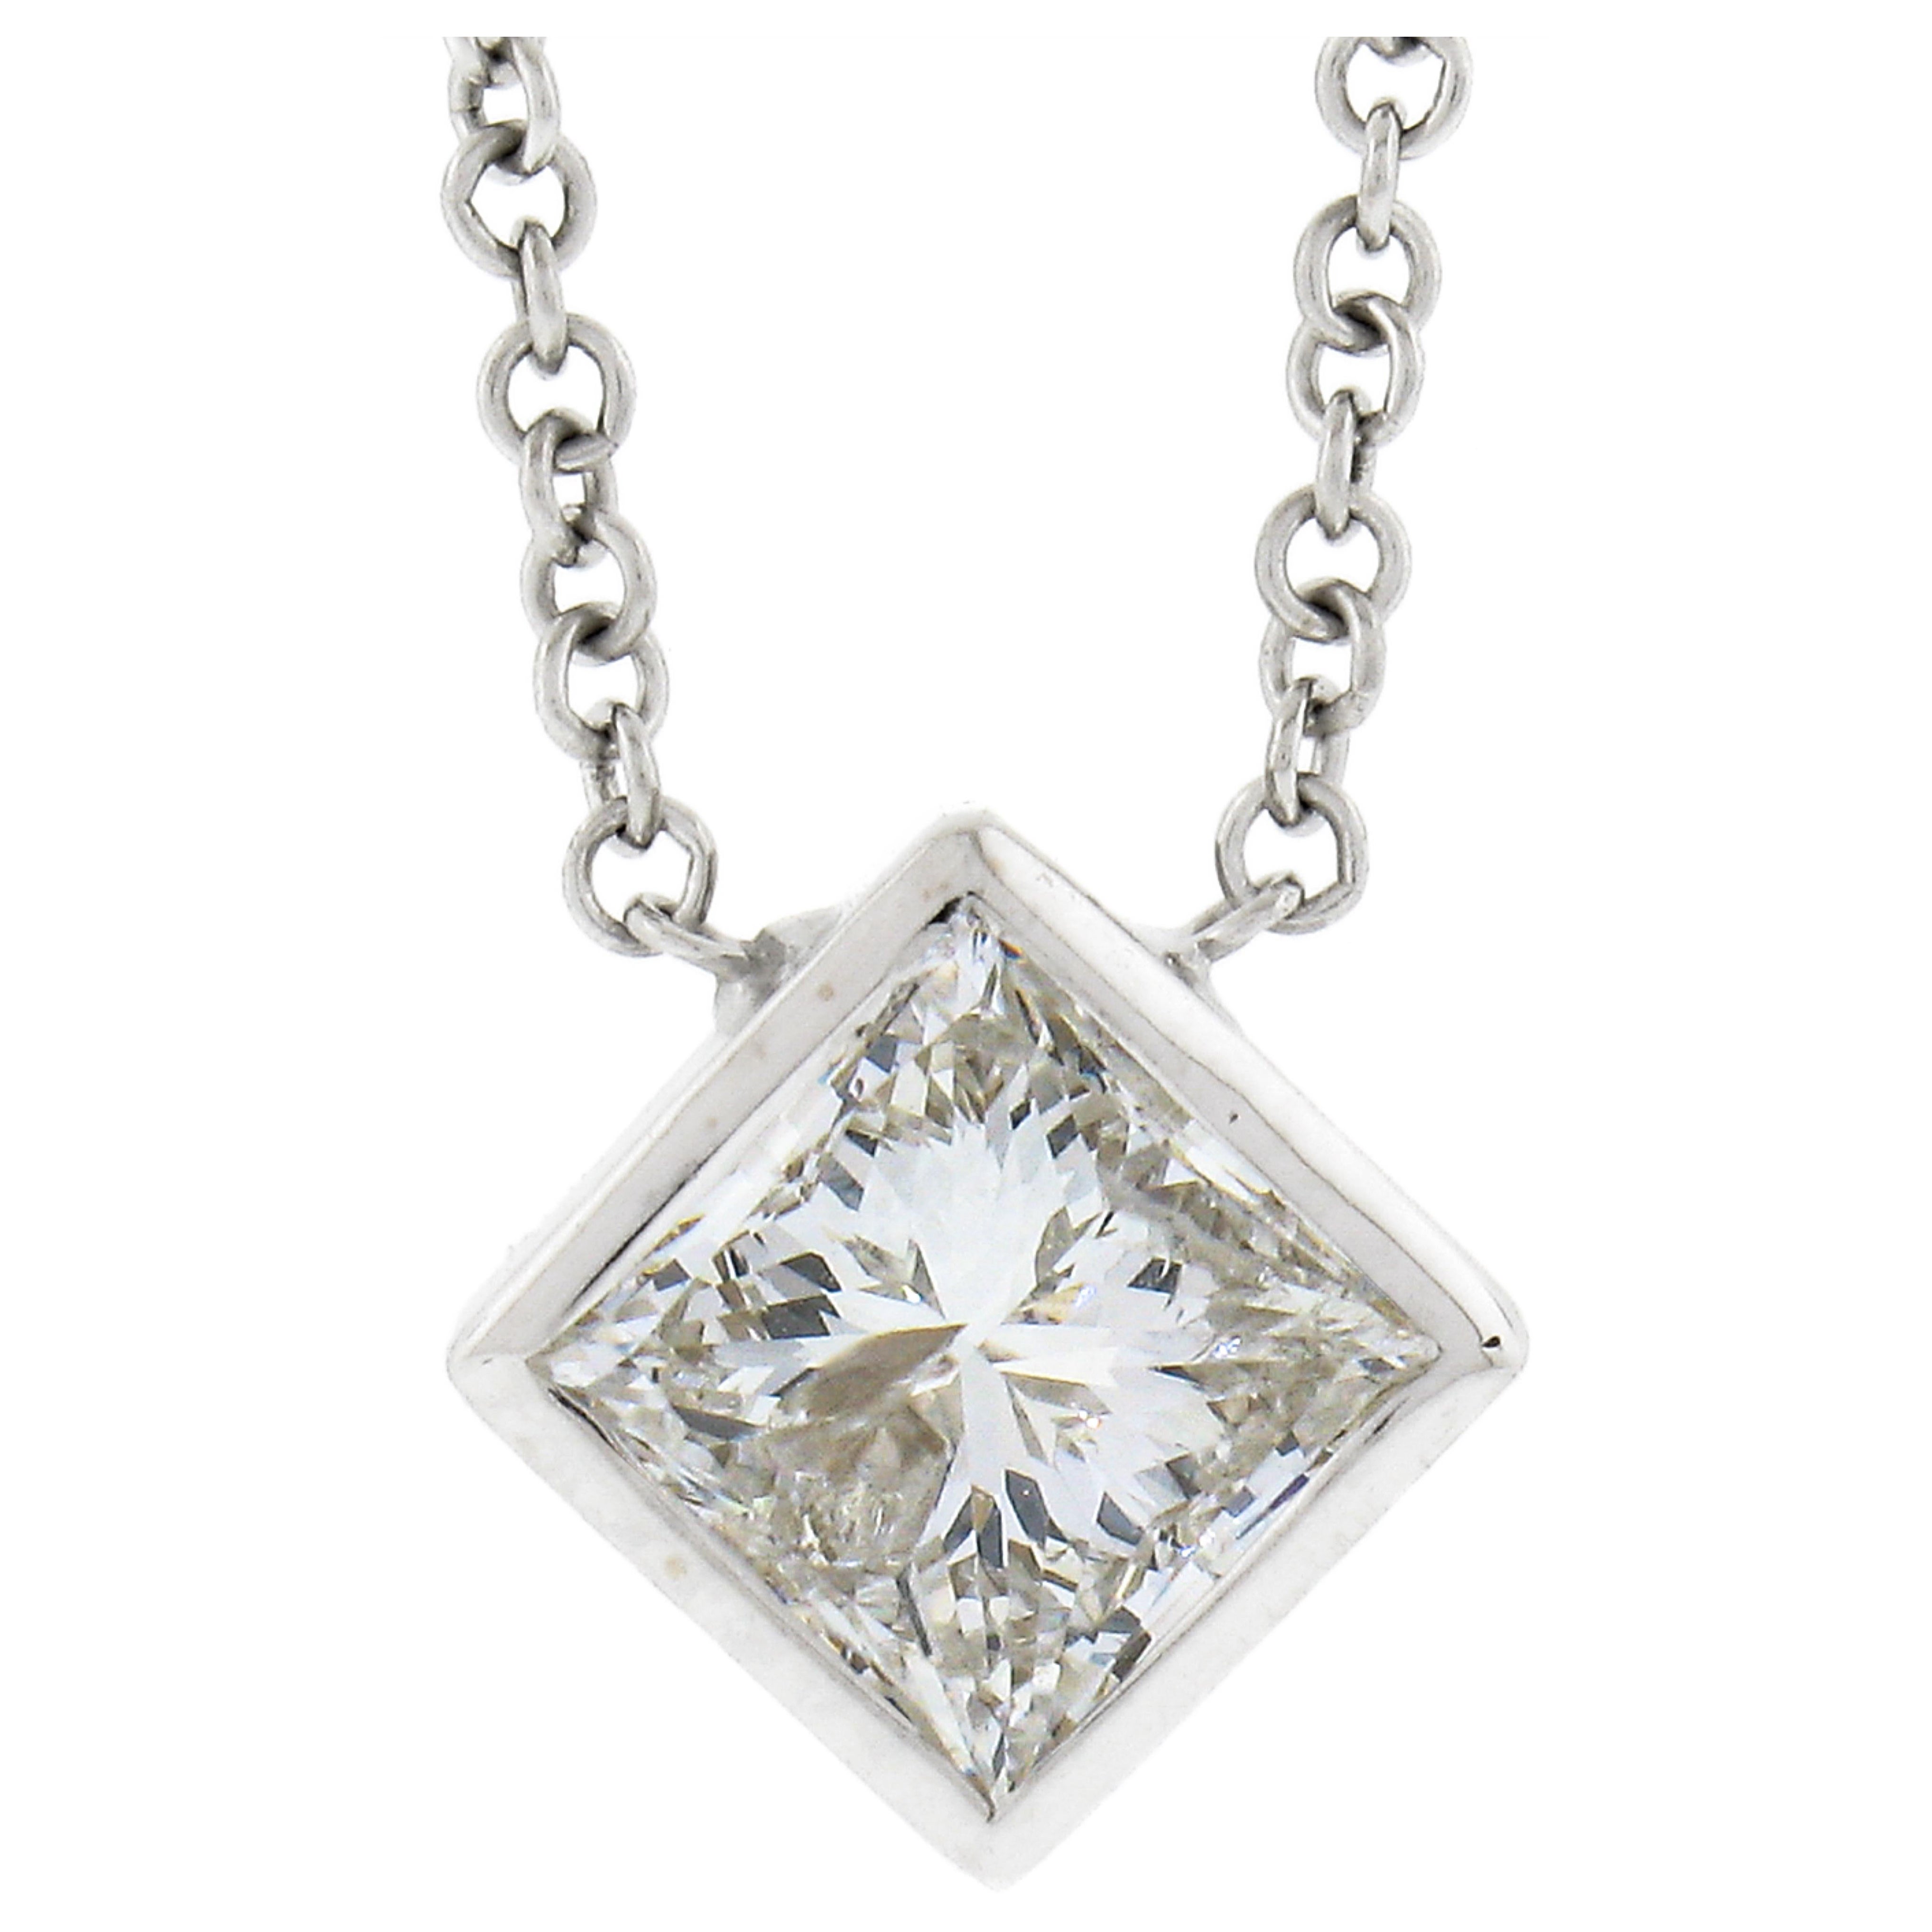 New 14k White Gold 0.59ctw Princess Cut Bezel Diamond Solitaire Pendant Necklace